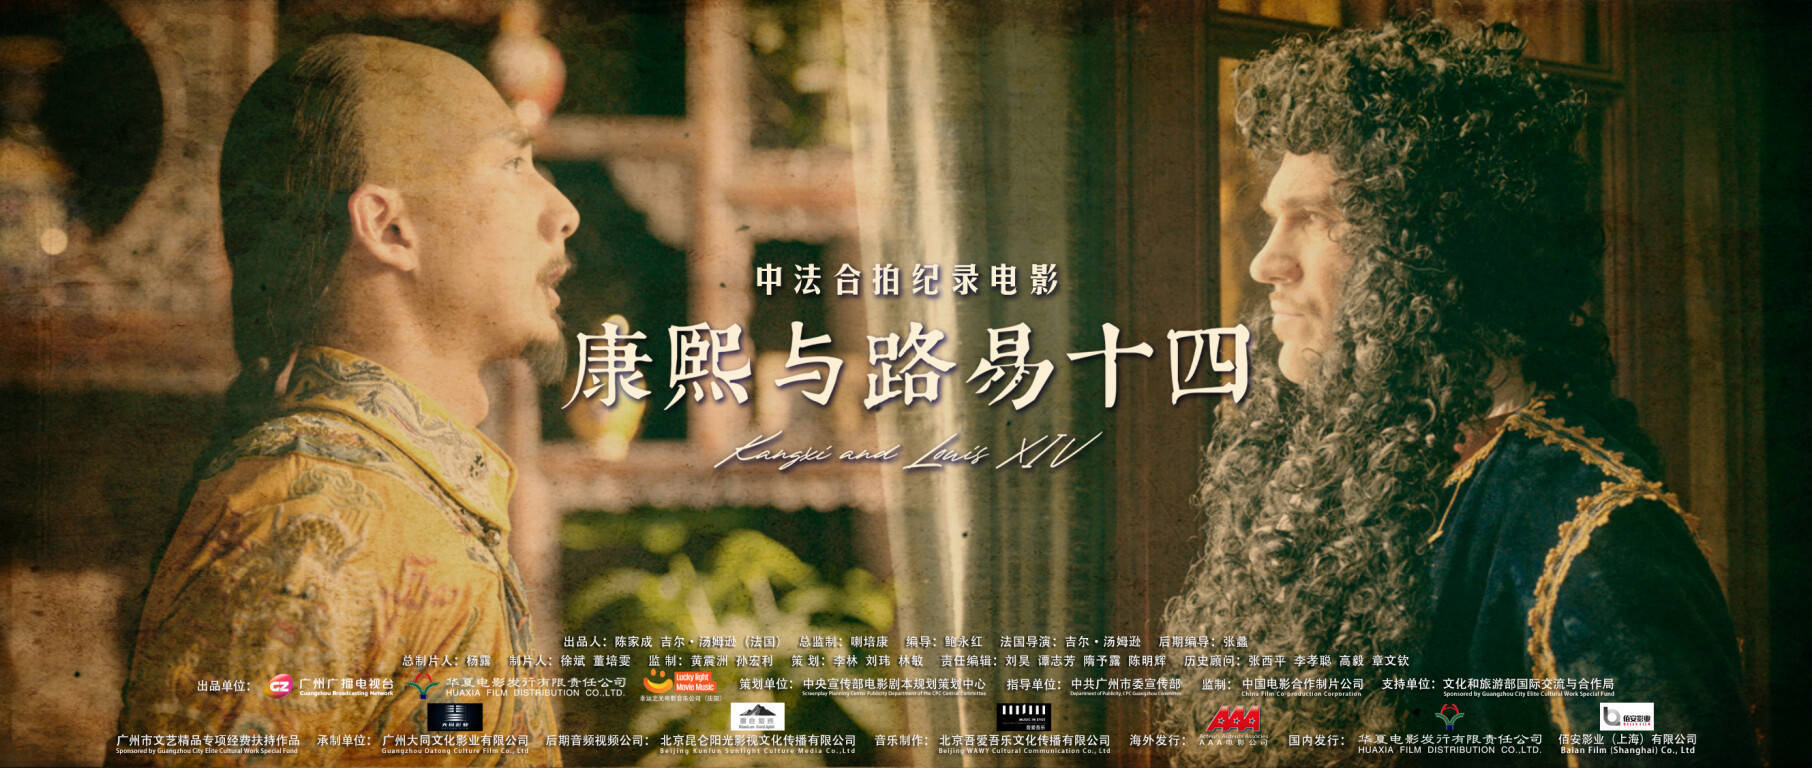 《康熙与路易十四》走进西关观影分享会举行,中国电影衍生产业研究院